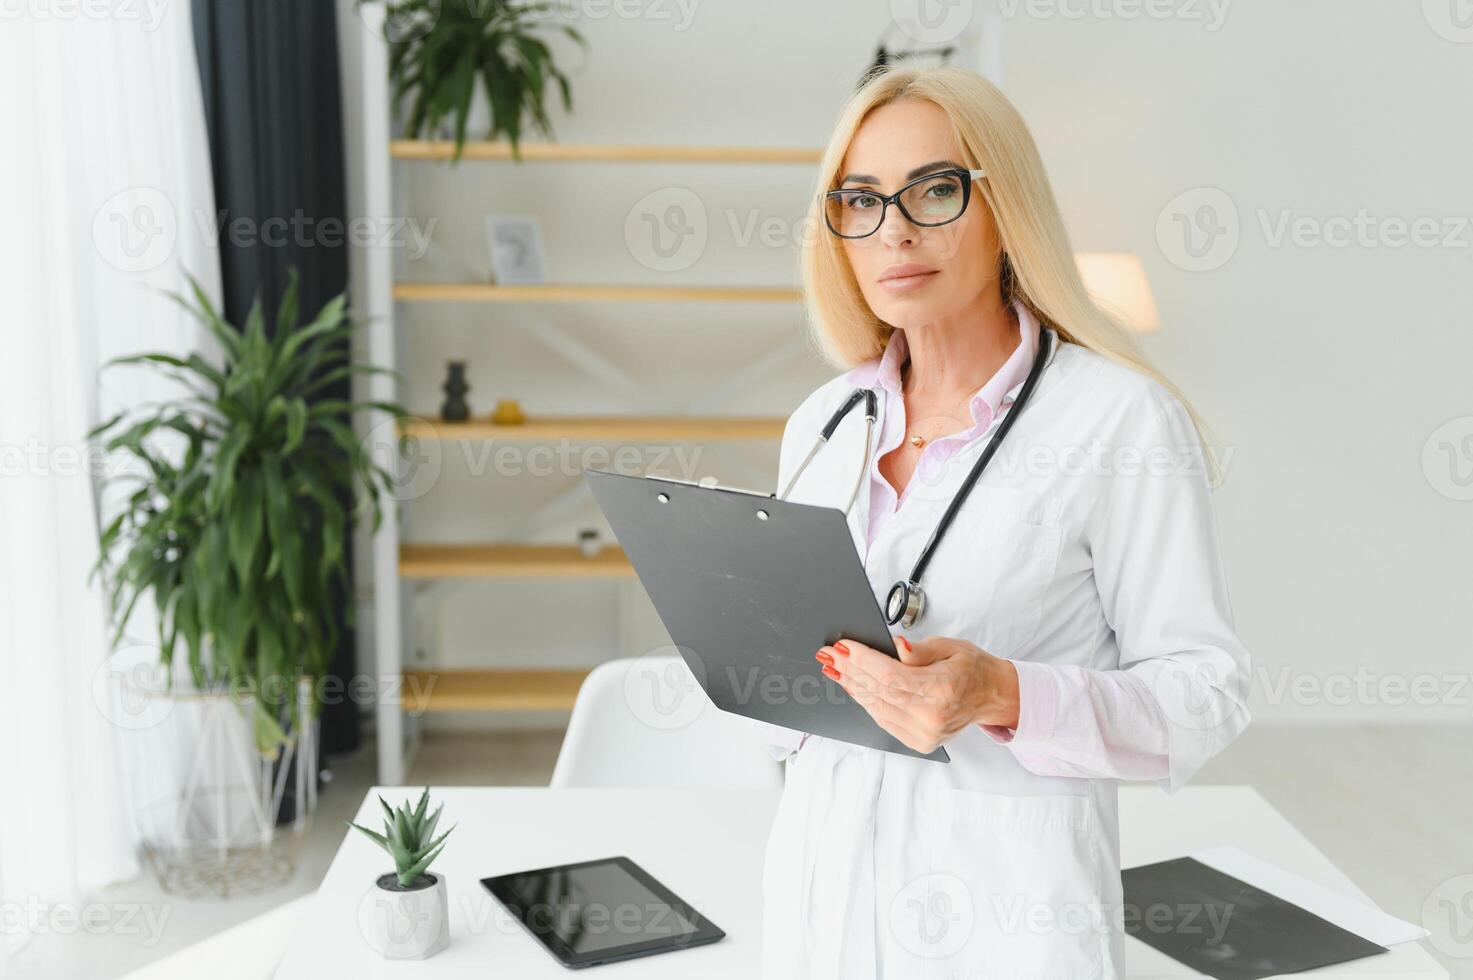 kvinna läkare bär labb täcka och stetoskop och innehav Urklipp i henne händer medan stående på sjukhus. foto